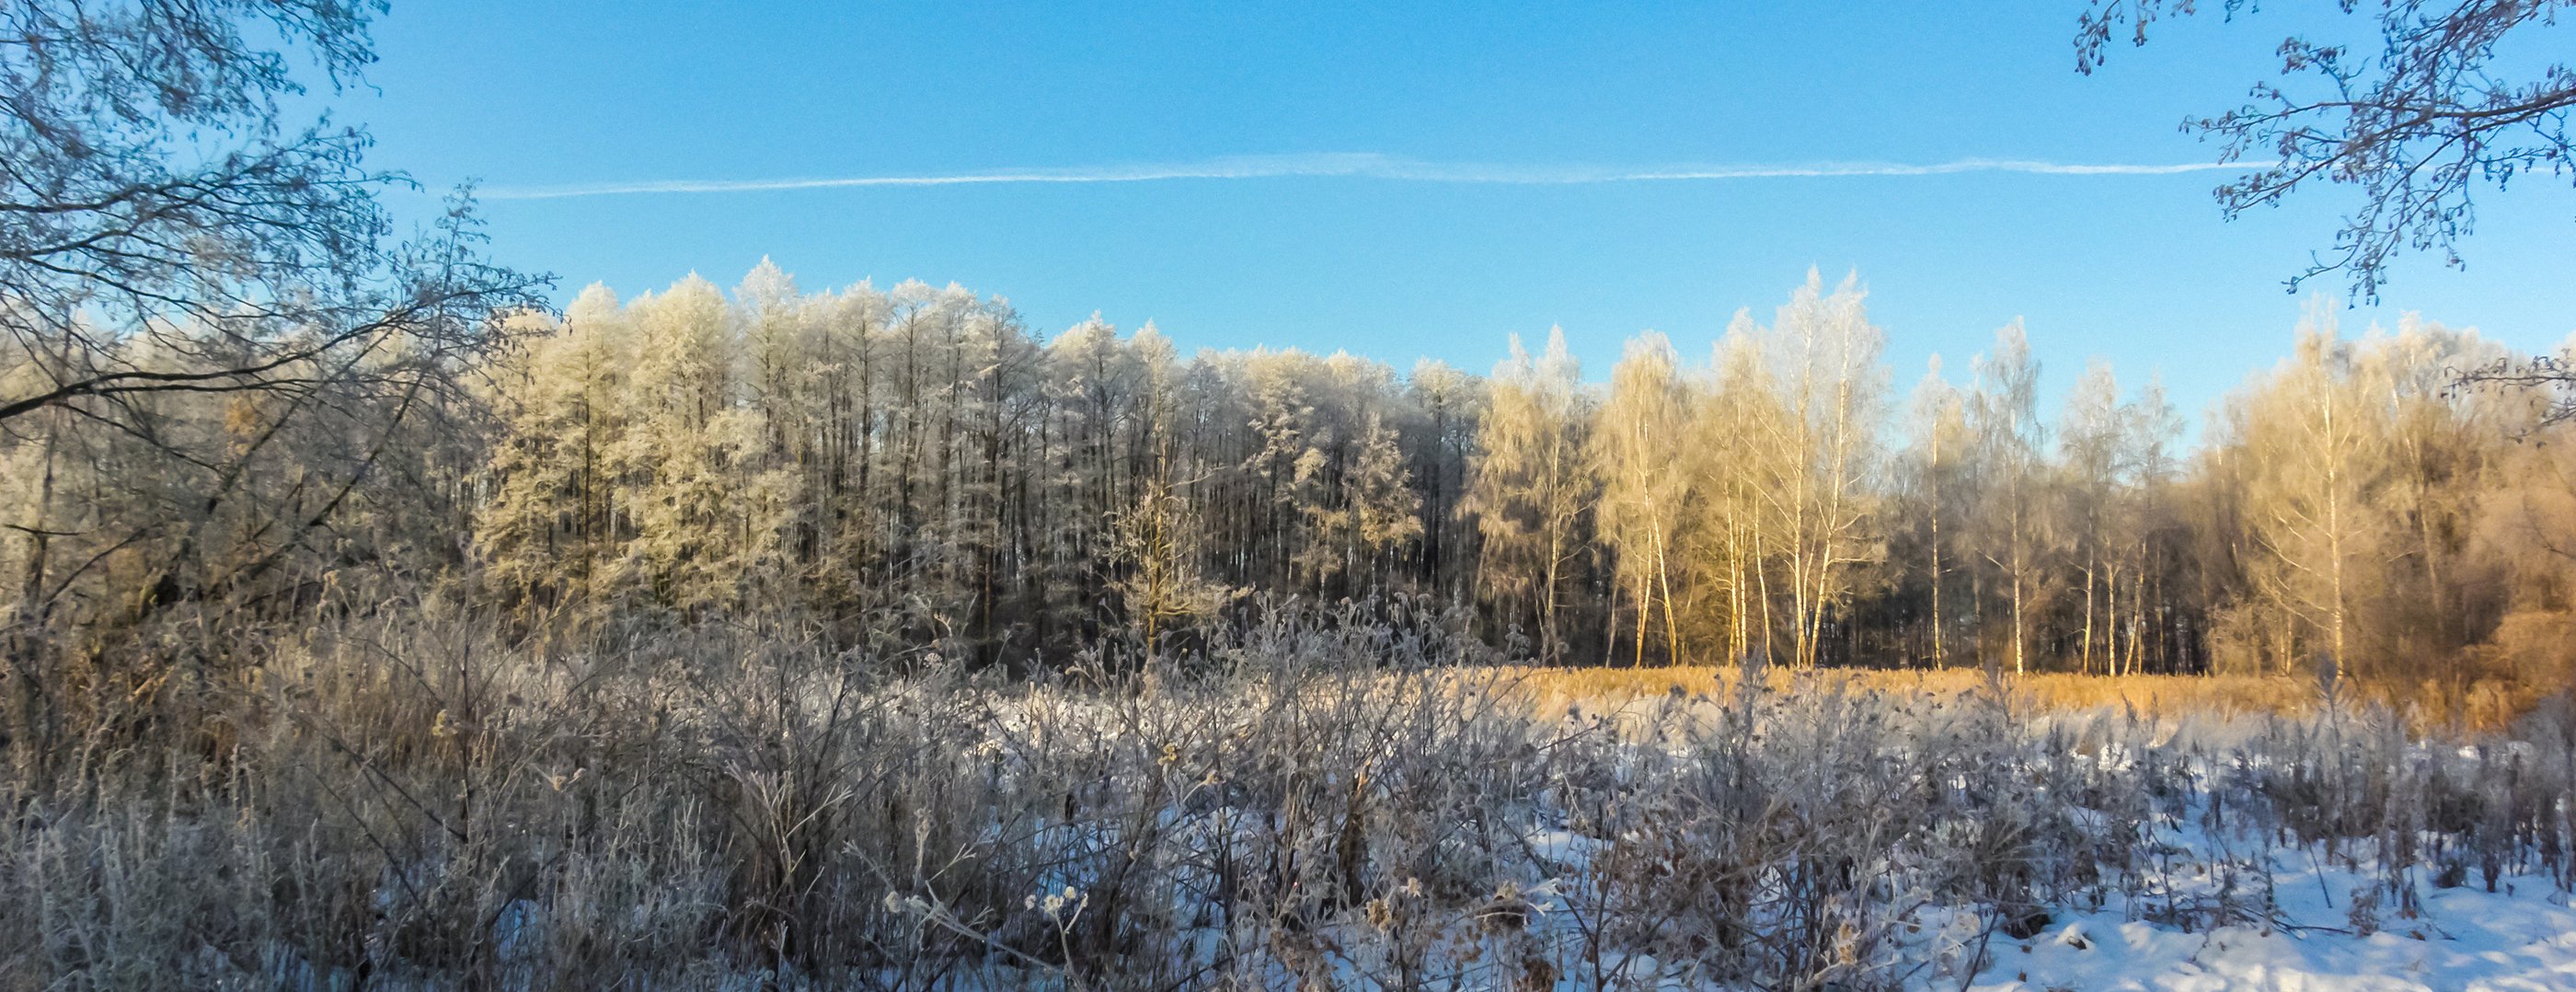 лес, зима, иней, мороз, берёзы, ольха, Руслан Востриков